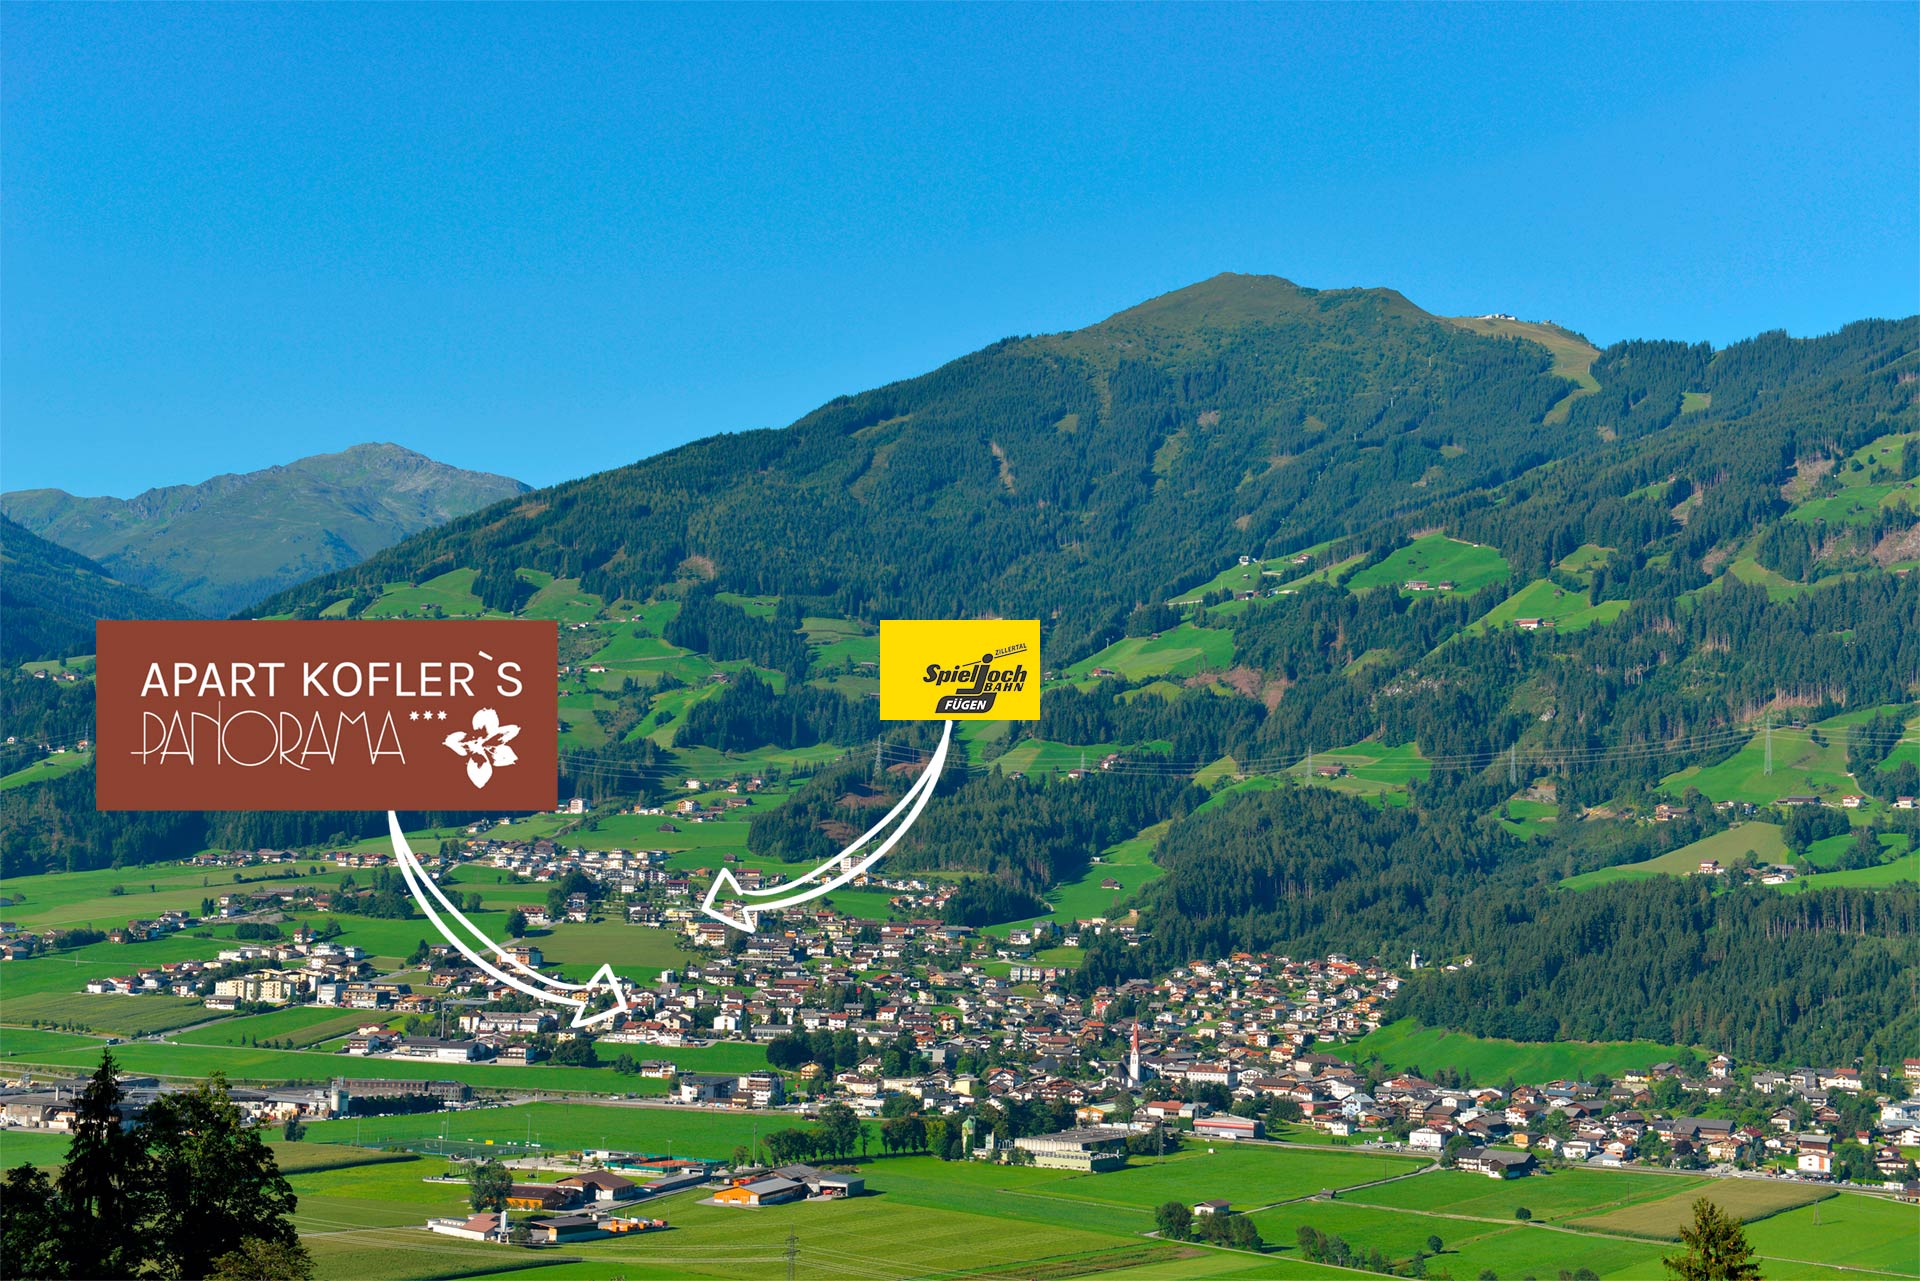 Apart Kofler's Panorama Zillertal map (C) Wörgötter & Friends